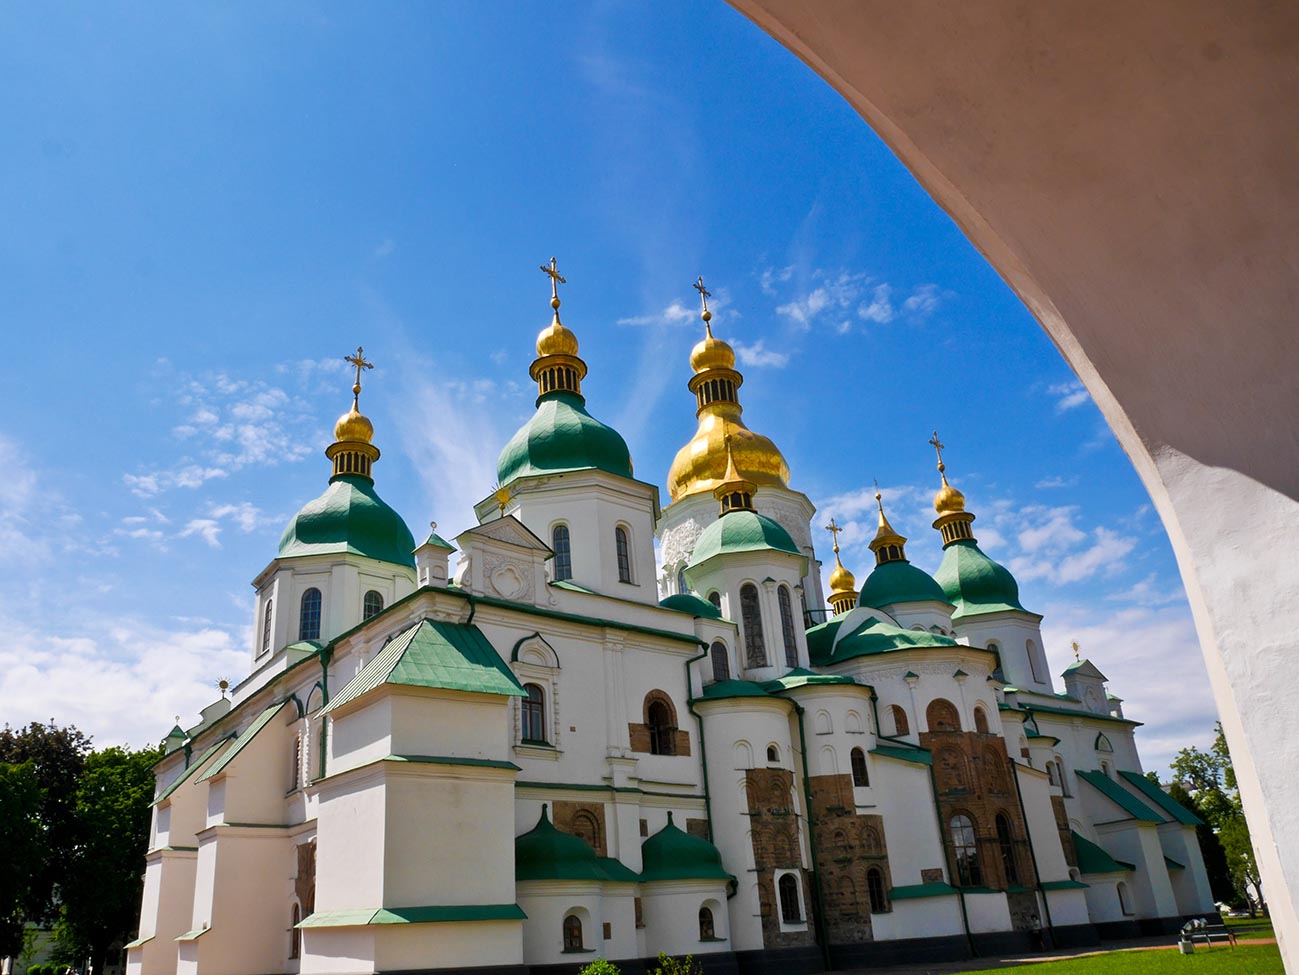 St Sophia, Kiev